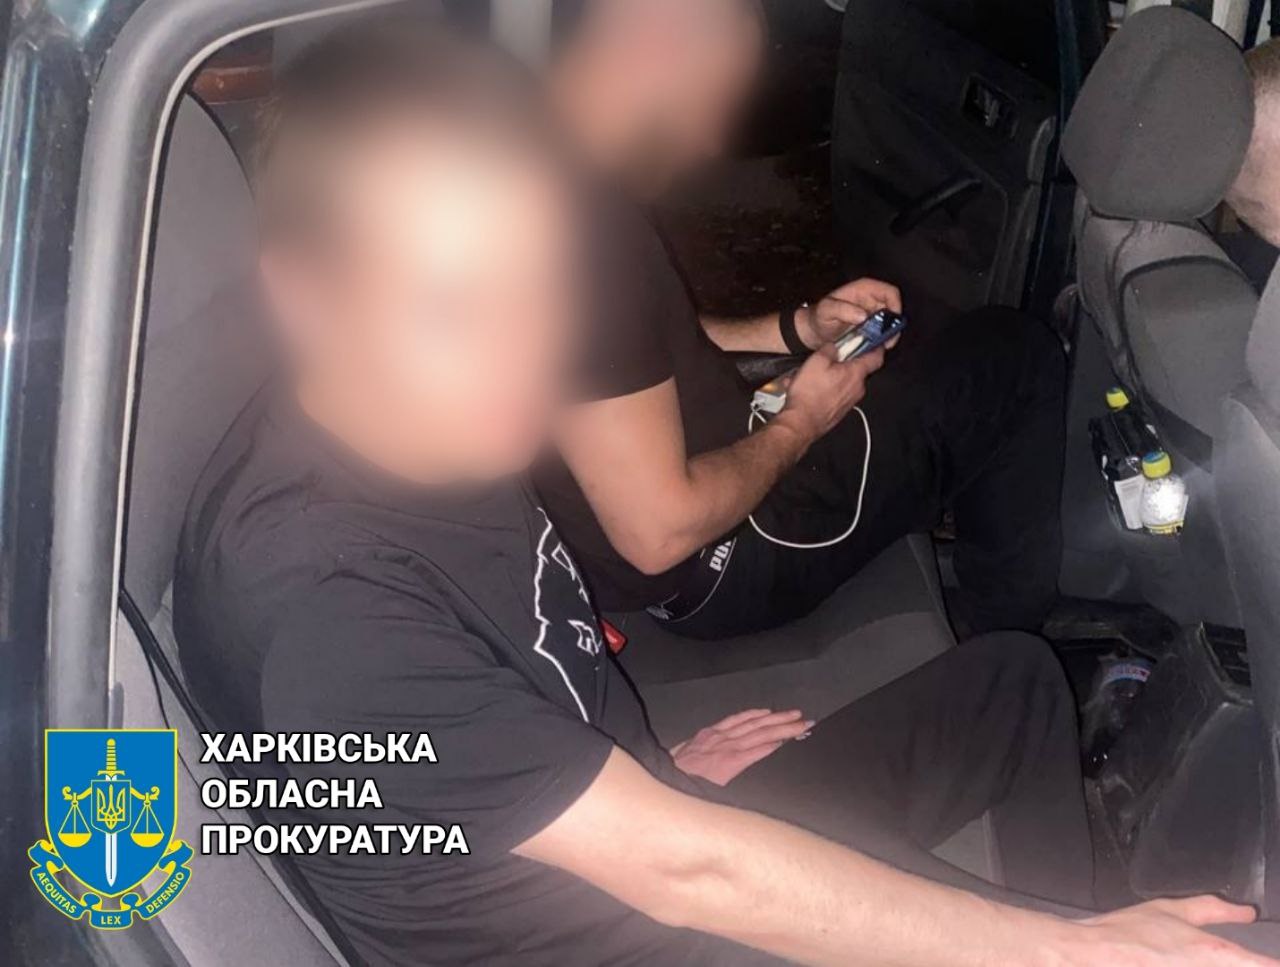 Криминал Харьков: Задержан закладчик с психотропами, под подозрением три человека